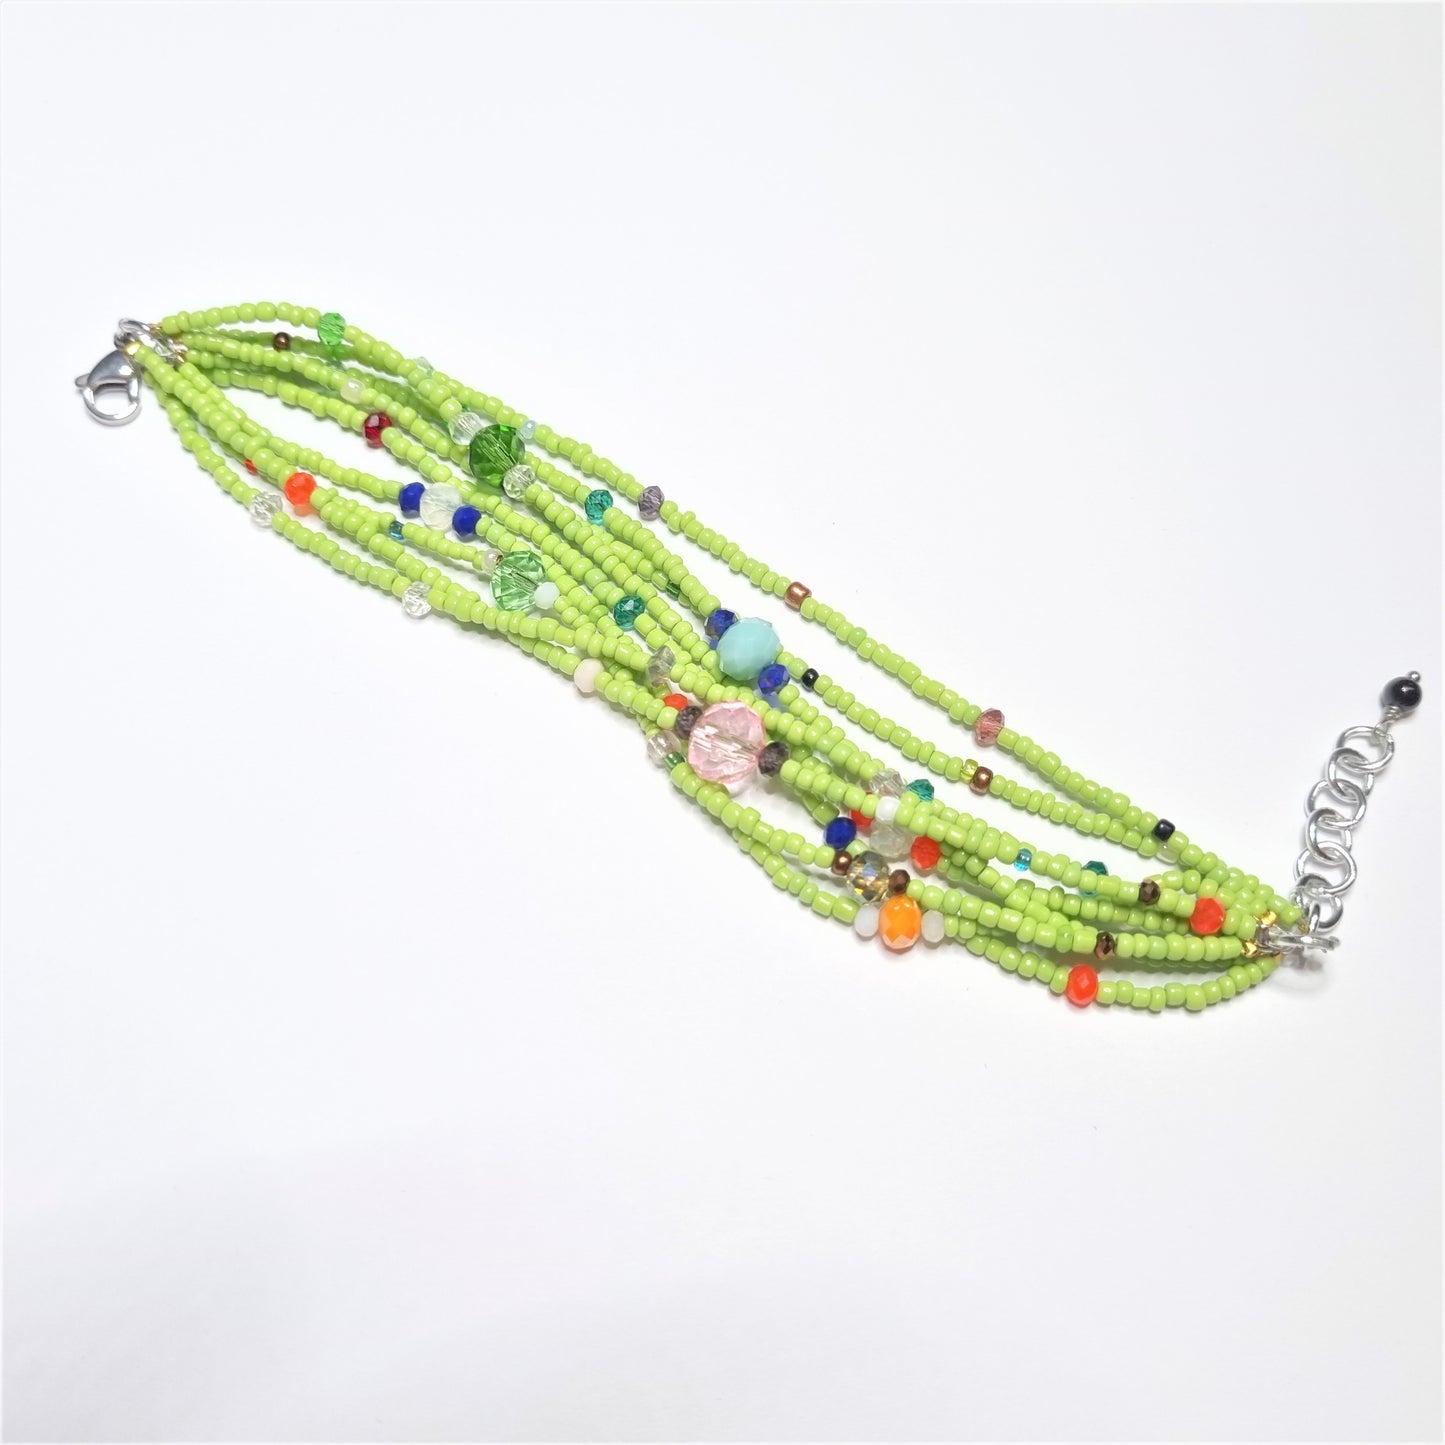 Collana SOPHIA i colori .028 piccolissime perline verde prato e perline colorate come fiori.